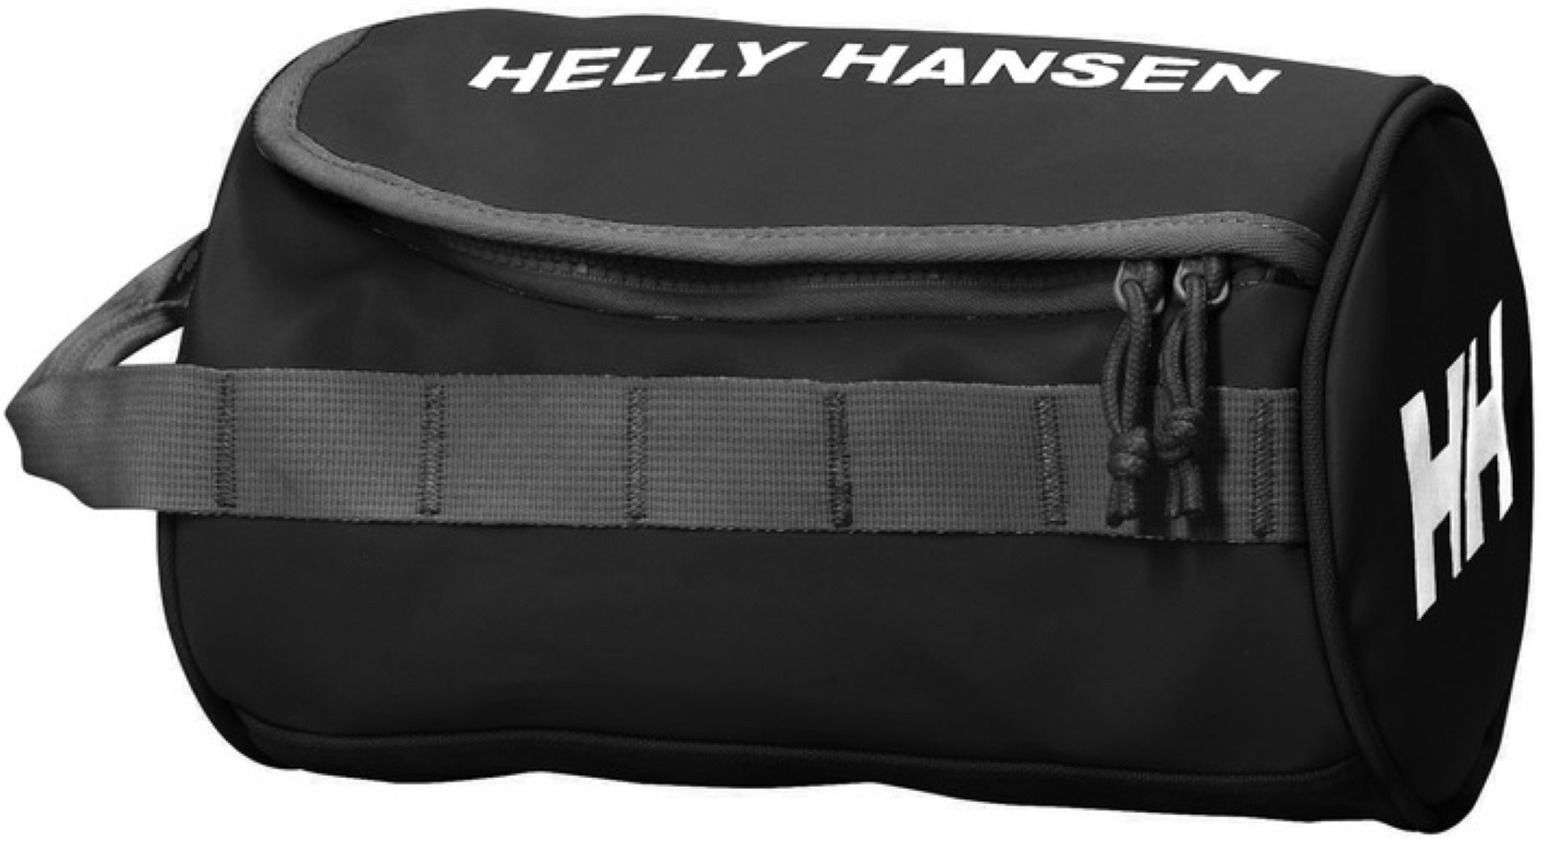  Helly Hansen Hh Wash Bag 2, 68007_990, 